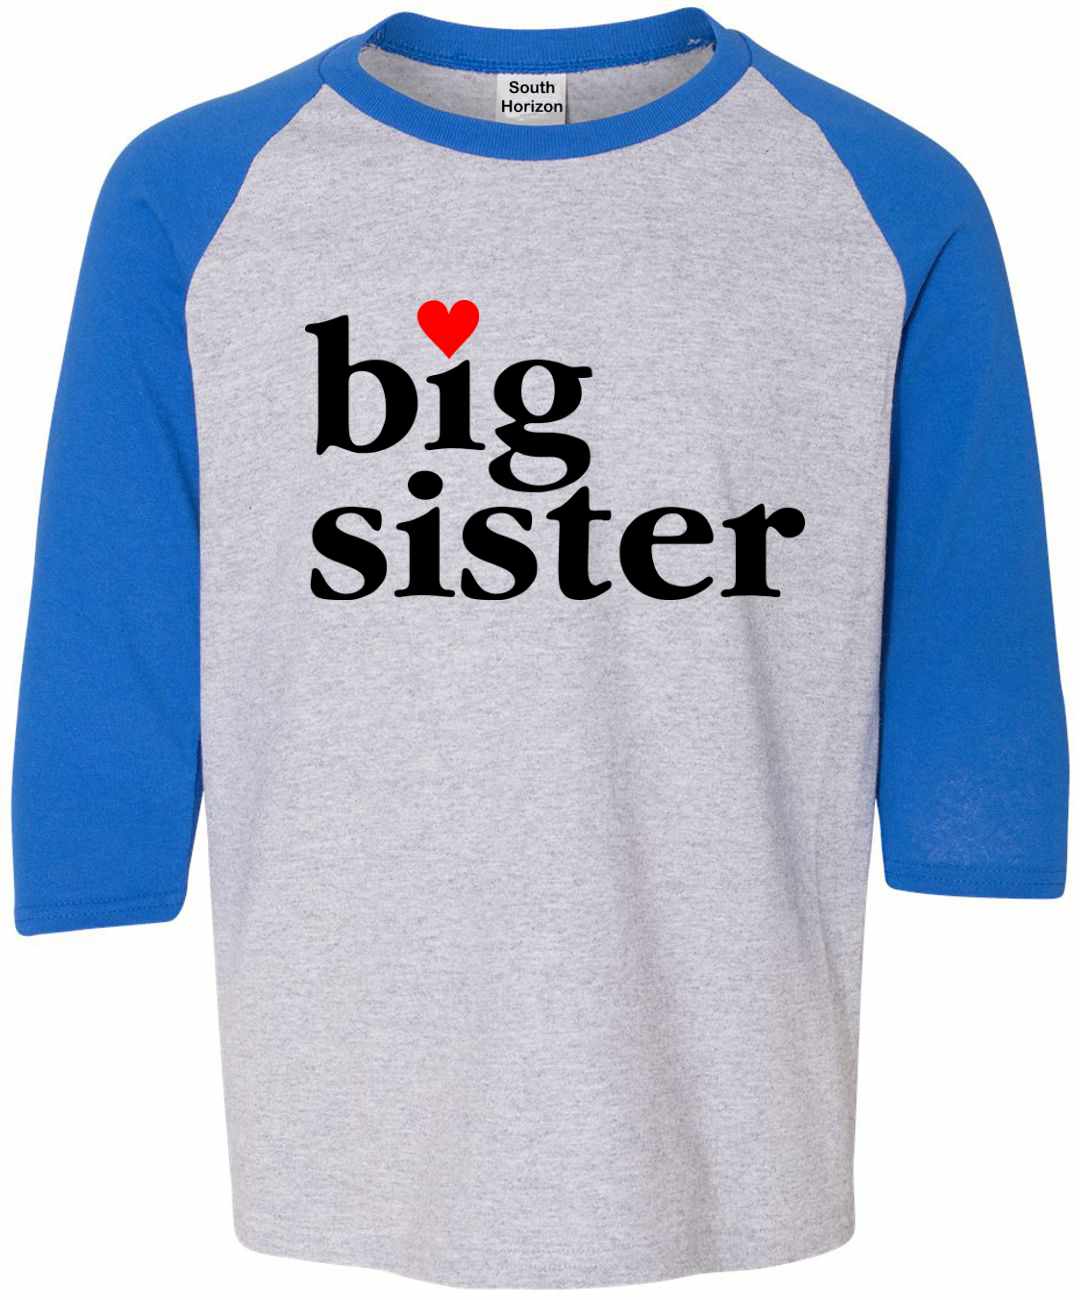 Big Sister on Youth Baseball Shirt (#986-212)